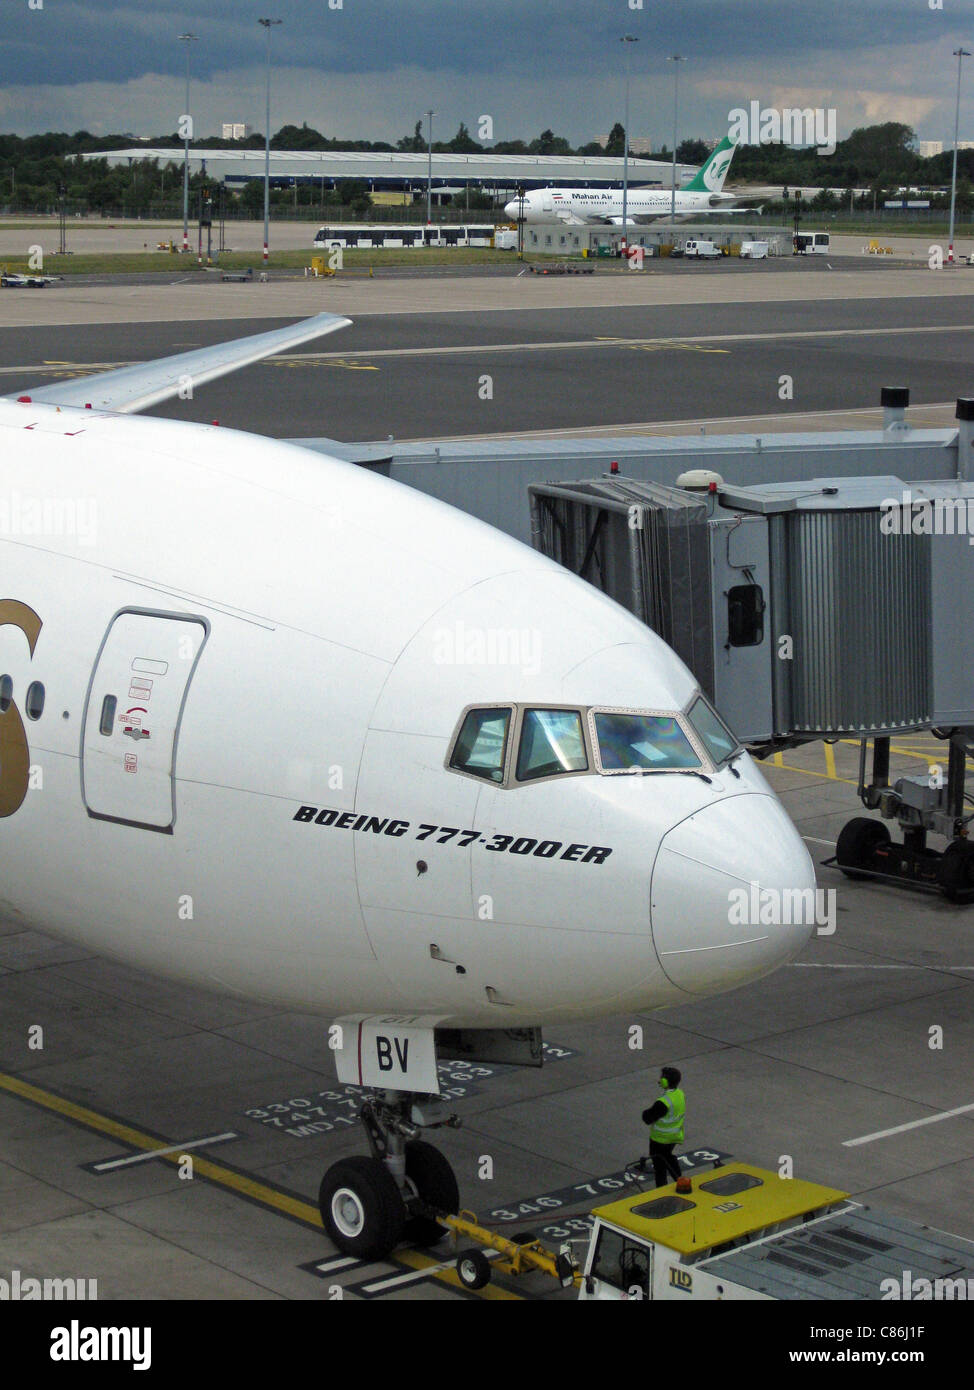 Emirates Airlines Boeing 777-300 ER, il numero di serie A6-EBV, l'Aeroporto Internazionale di Birmingham, Birmingham, Inghilterra, Regno Unito, Europa. Foto Stock